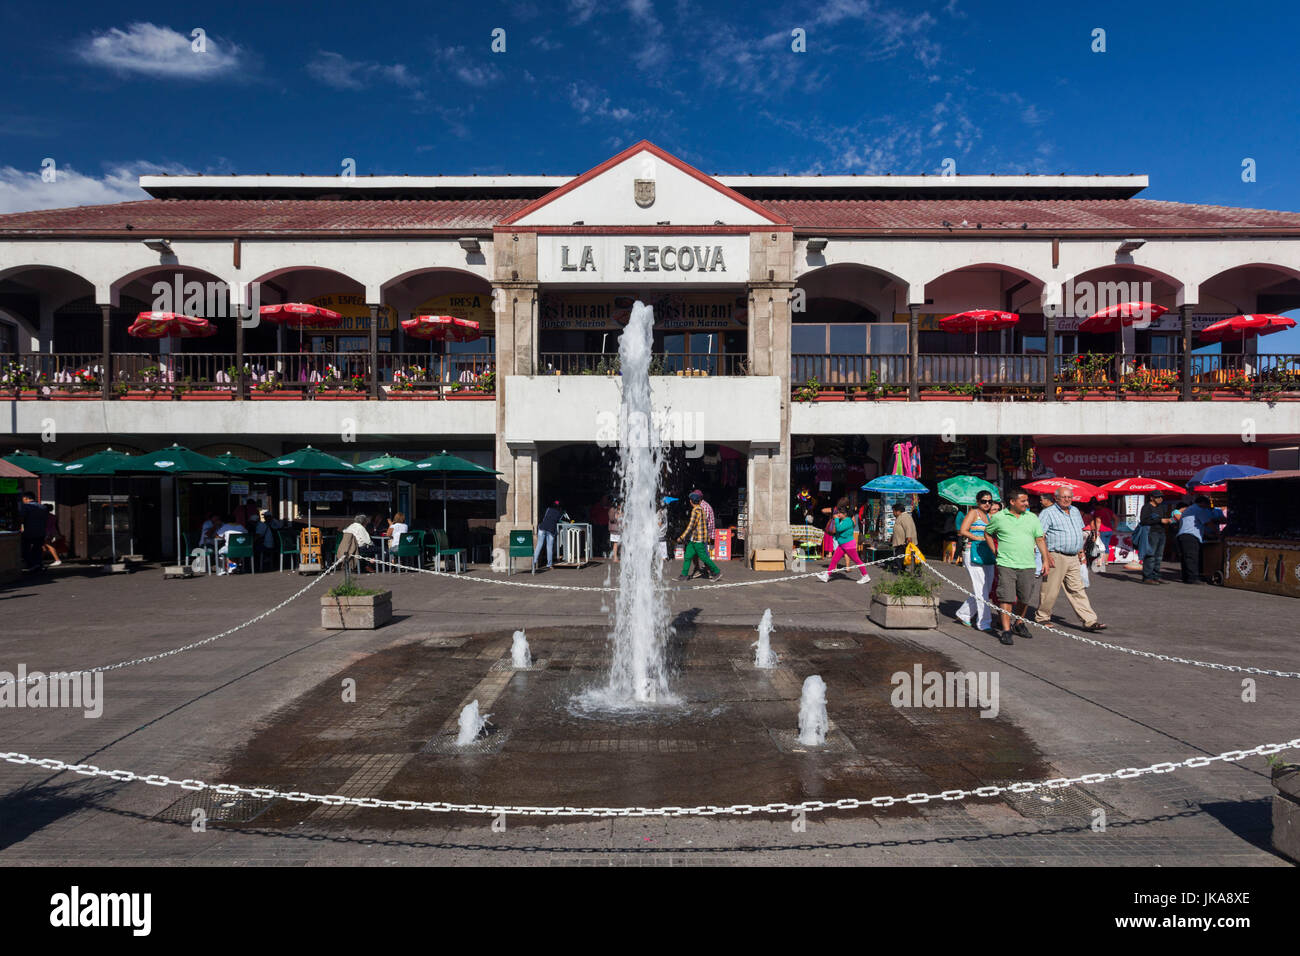 Chile, La Serena, La Recova market, exterior Stock Photo